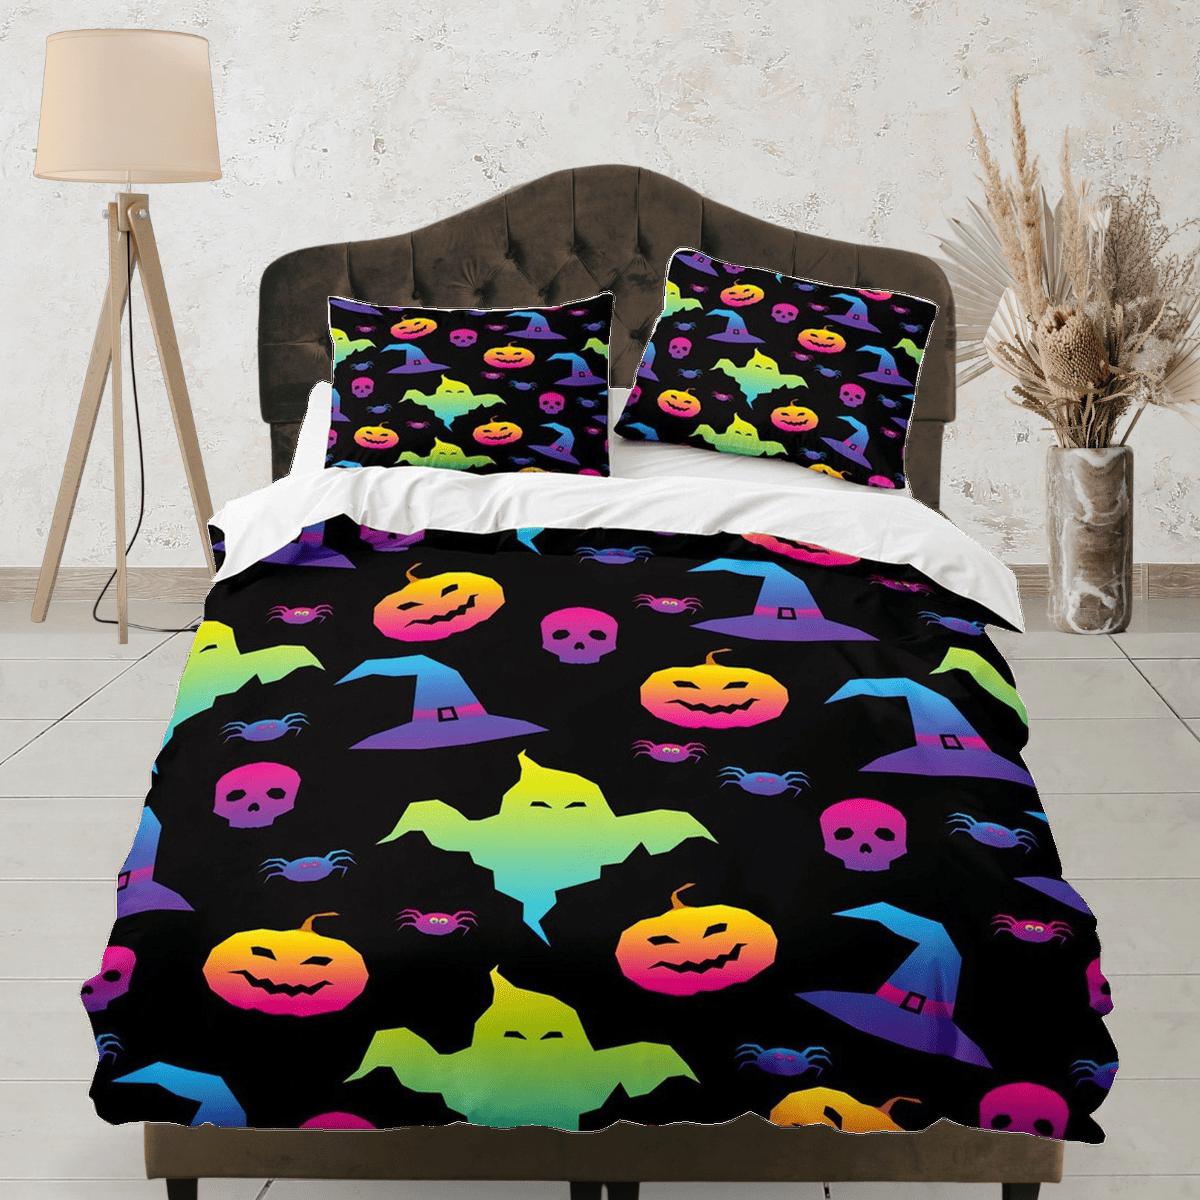 daintyduvet 90s neon cute halloween full bedding & pillowcase, duvet cover set dorm bedding, halloween decor, nursery toddler bedding, halloween gift